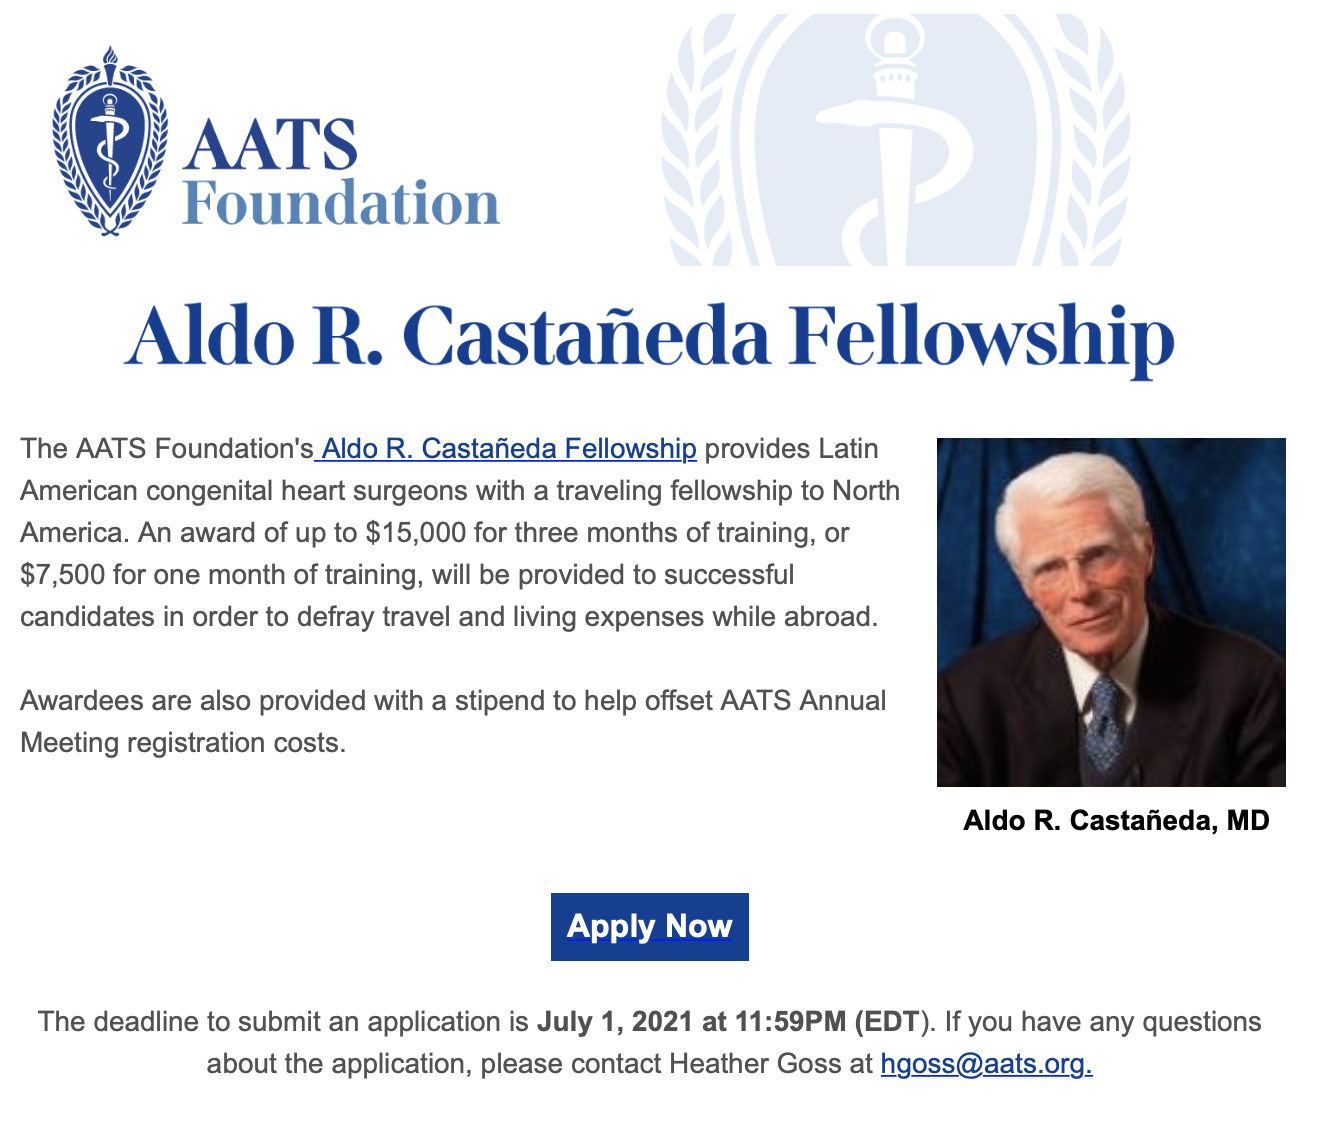 AATS foundation